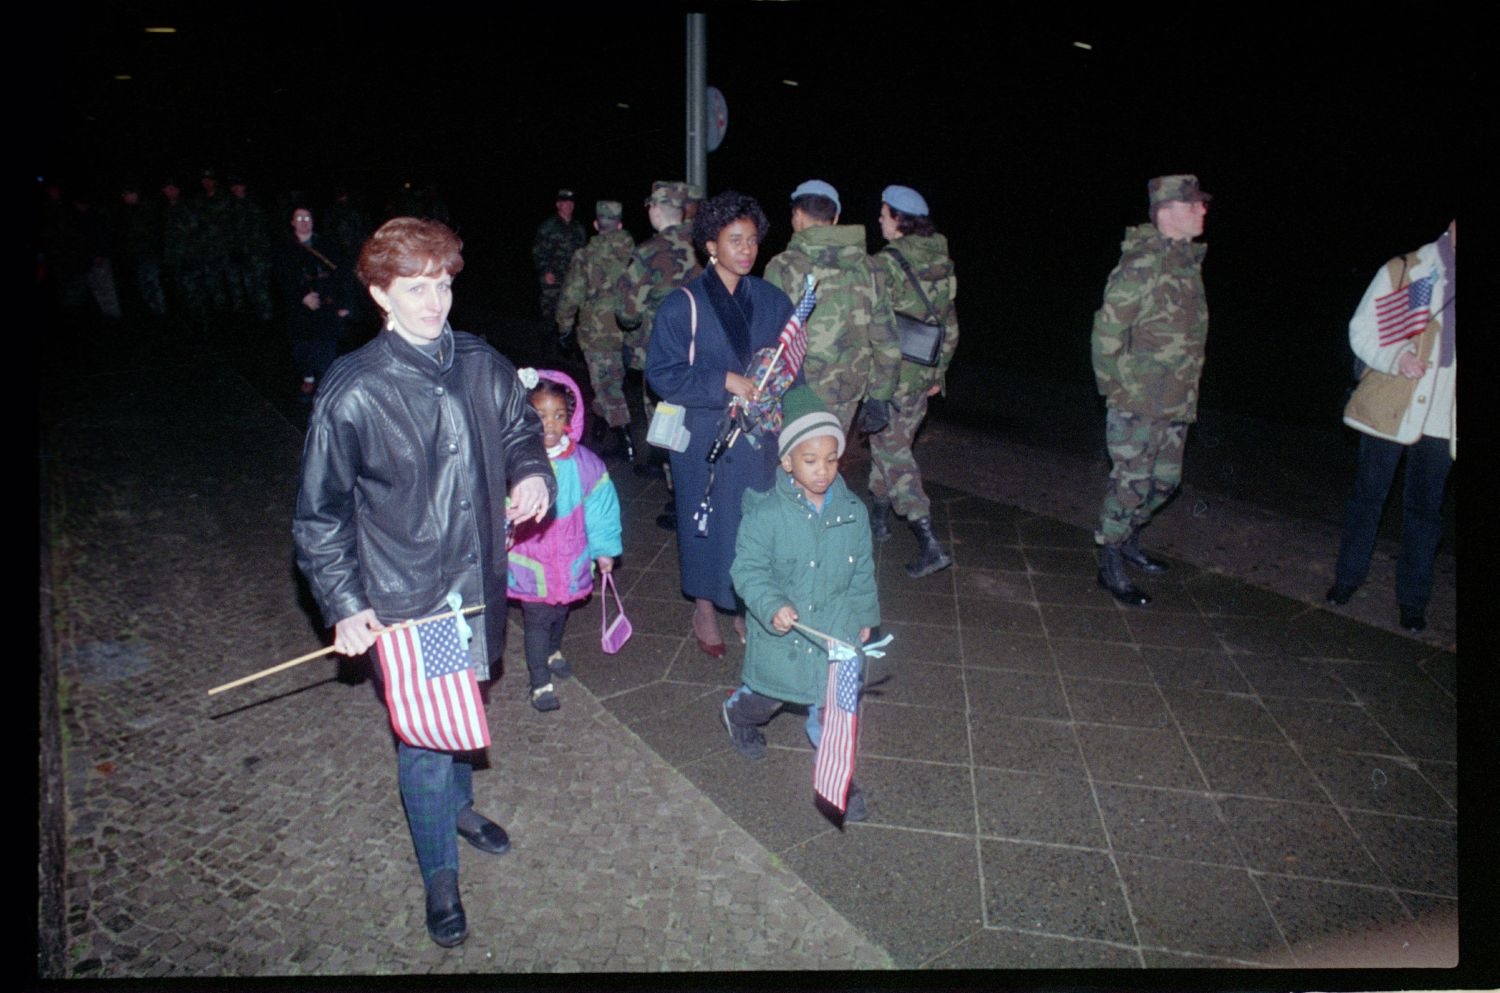 Fotografie: Begrüßung der Task Force 6-502nd nach ihrer Rückkehr aus Mazedonien in Berlin-Lichterfelde (AlliiertenMuseum/U.S. Army Photograph Public Domain Mark)